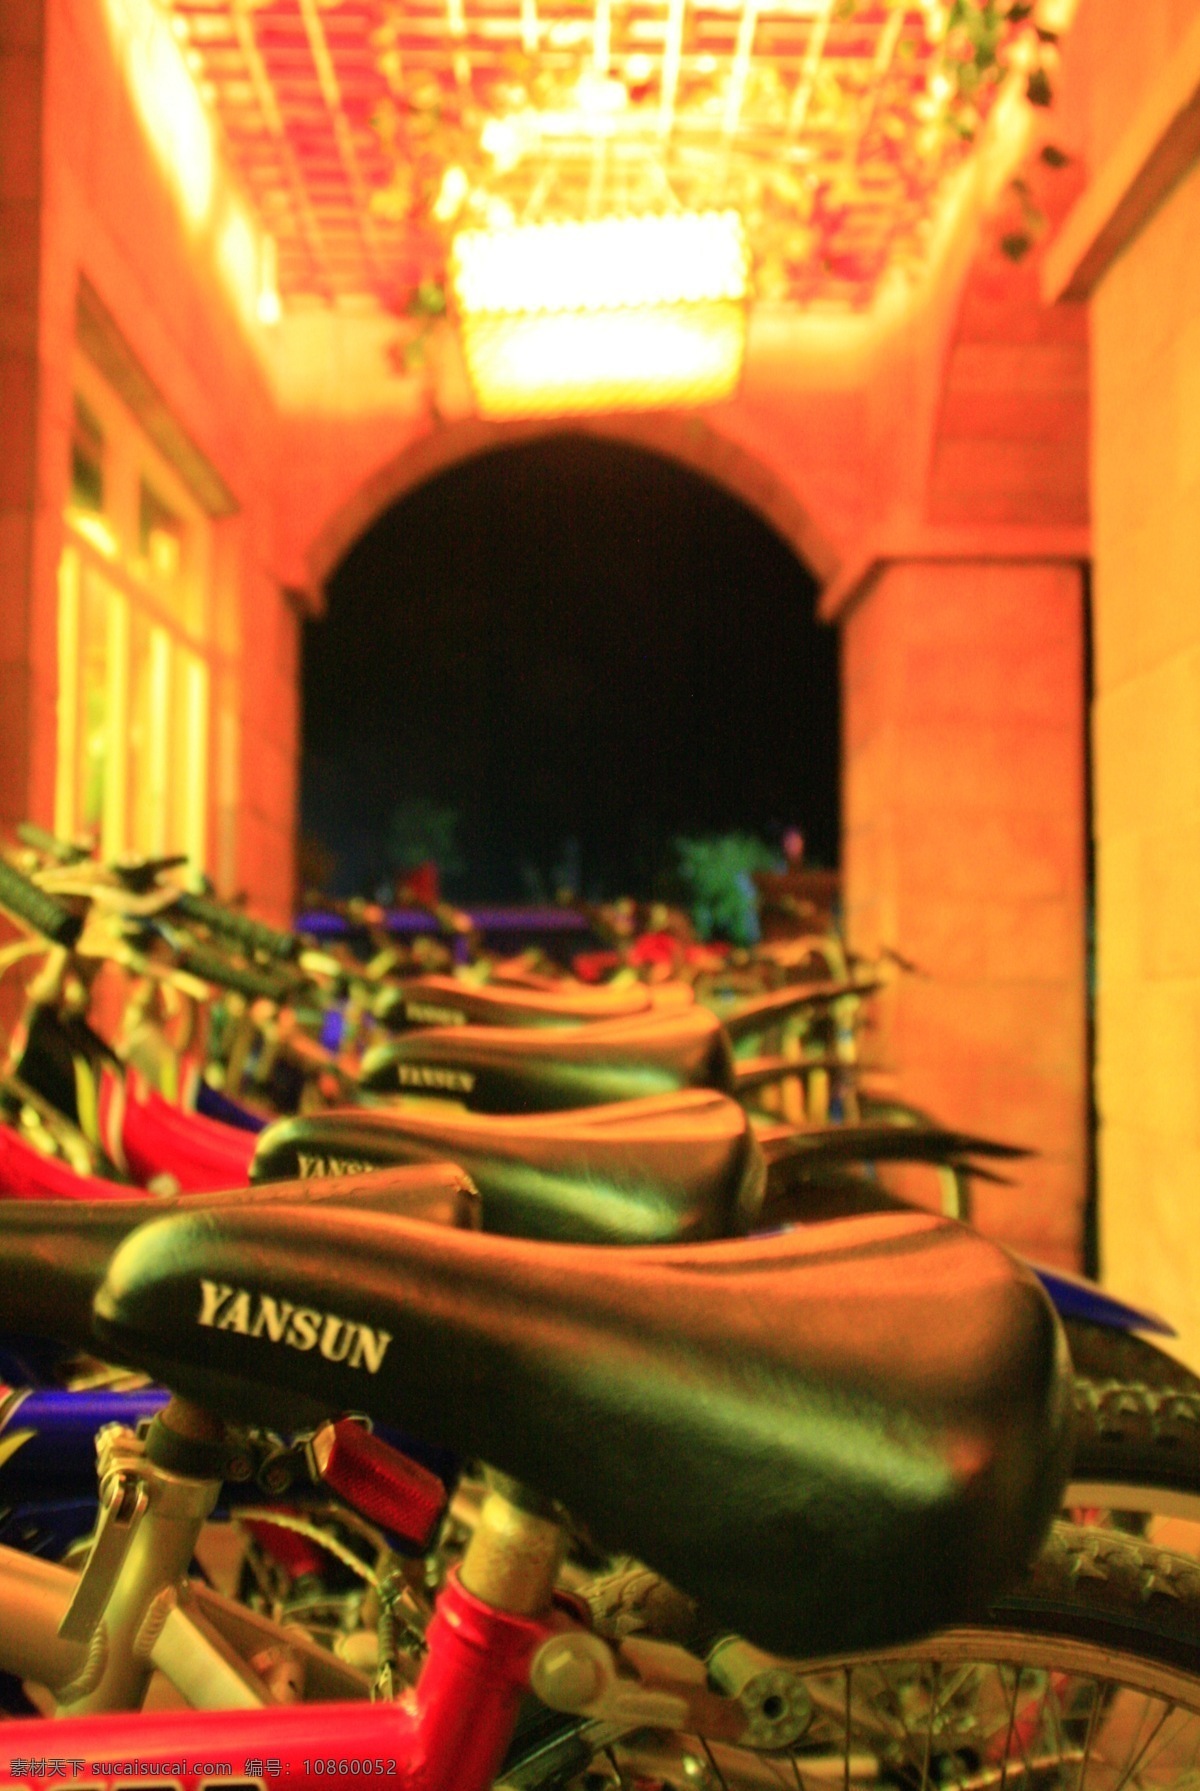 自行车 长廊 吊灯 生活百科 生活素材 夜景 拱廊 古兜温泉 停放 出租 装饰素材 灯饰素材